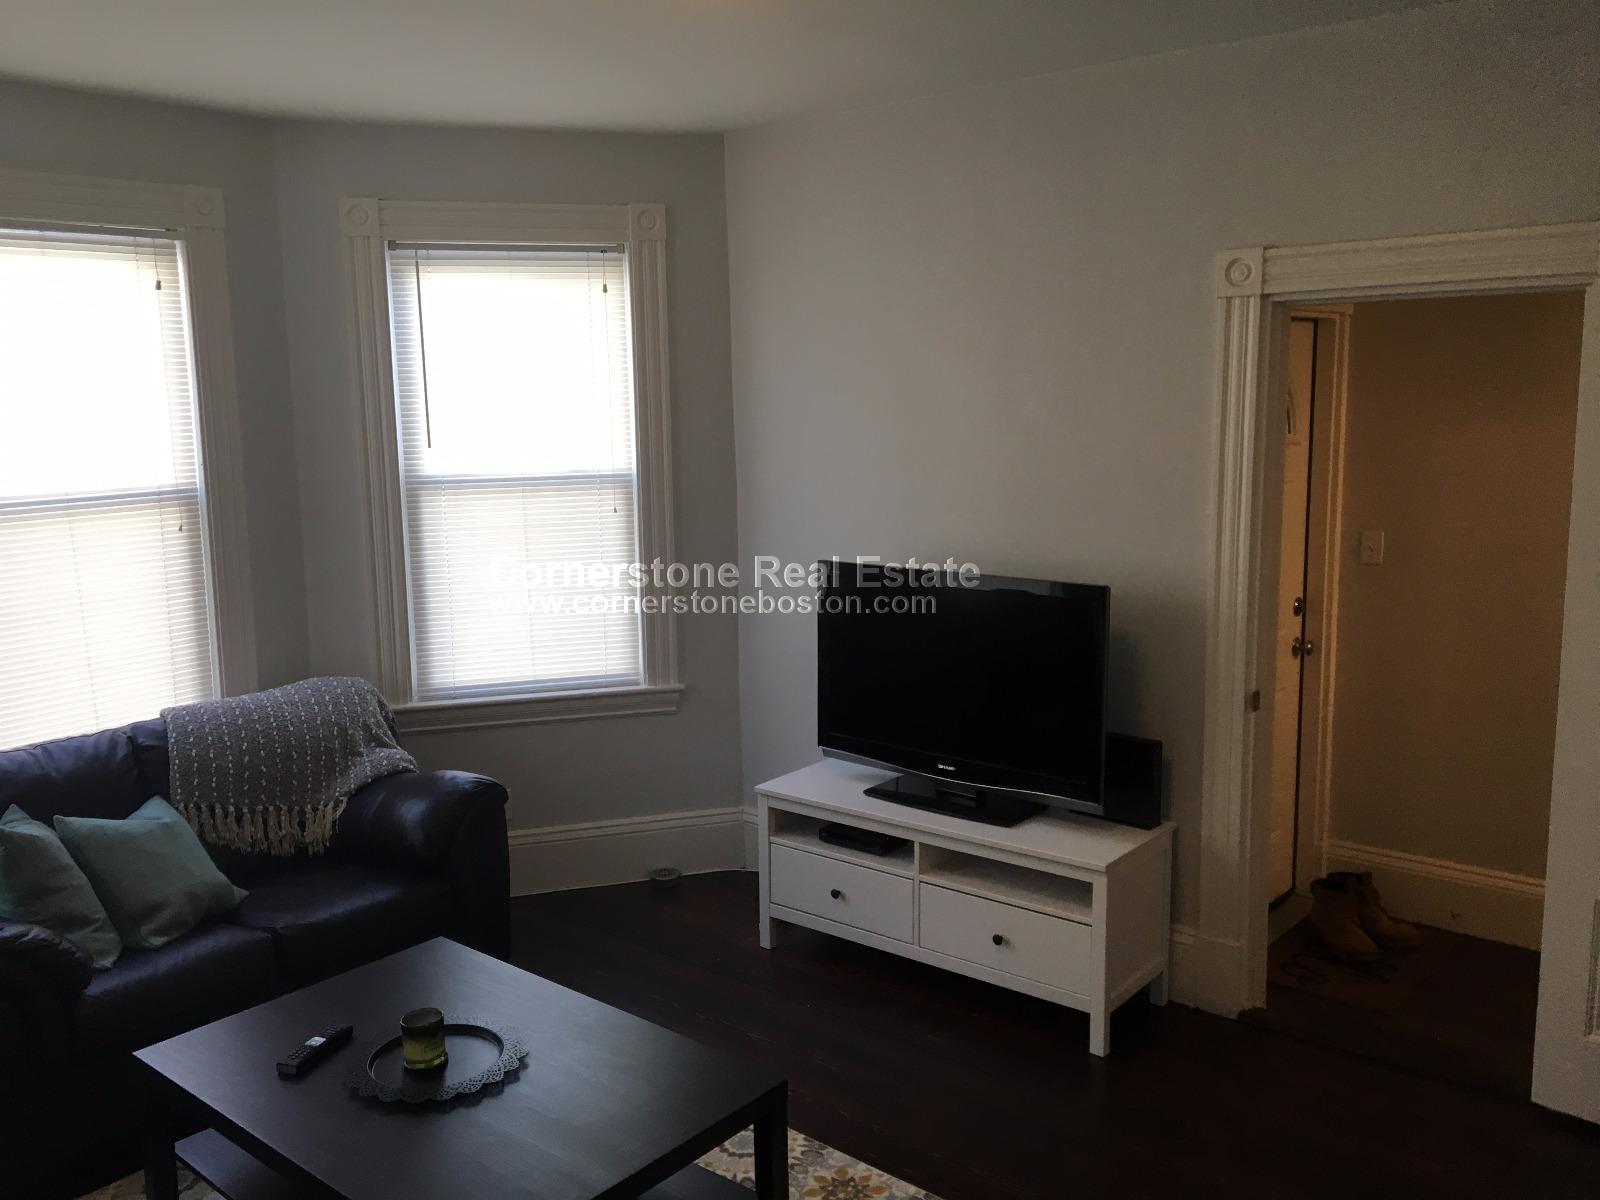 Photos of apartment on Rawson St.,Boston MA 02125